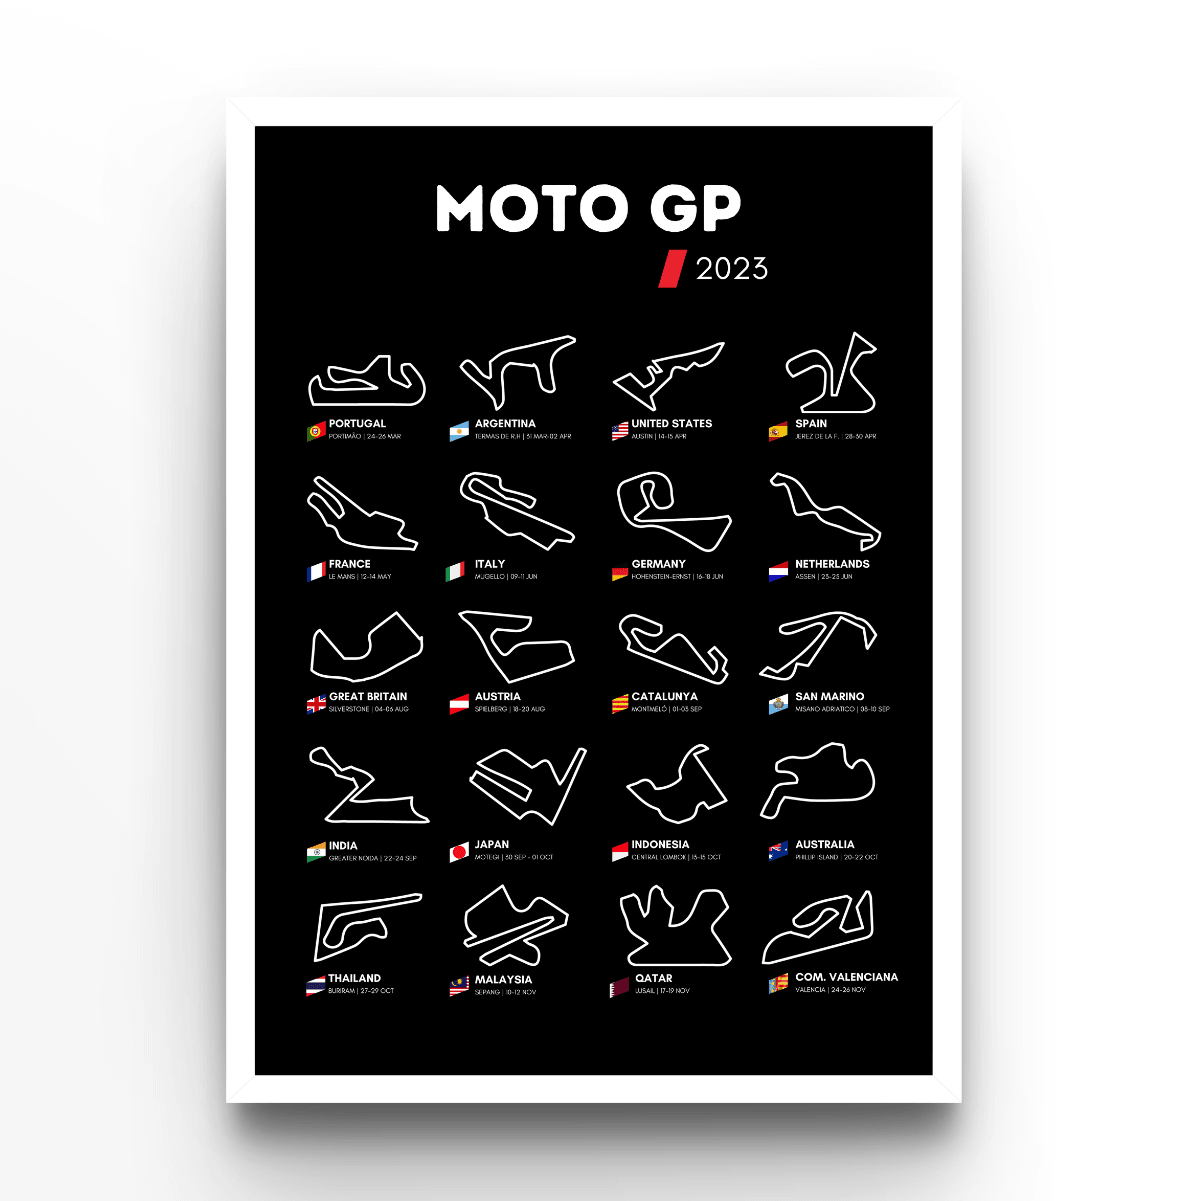 Circuit Wall Moto GP 2023 Black - A4, A3, A2 Posters Base - Poster Print Shop / Art Prints / PostersBase